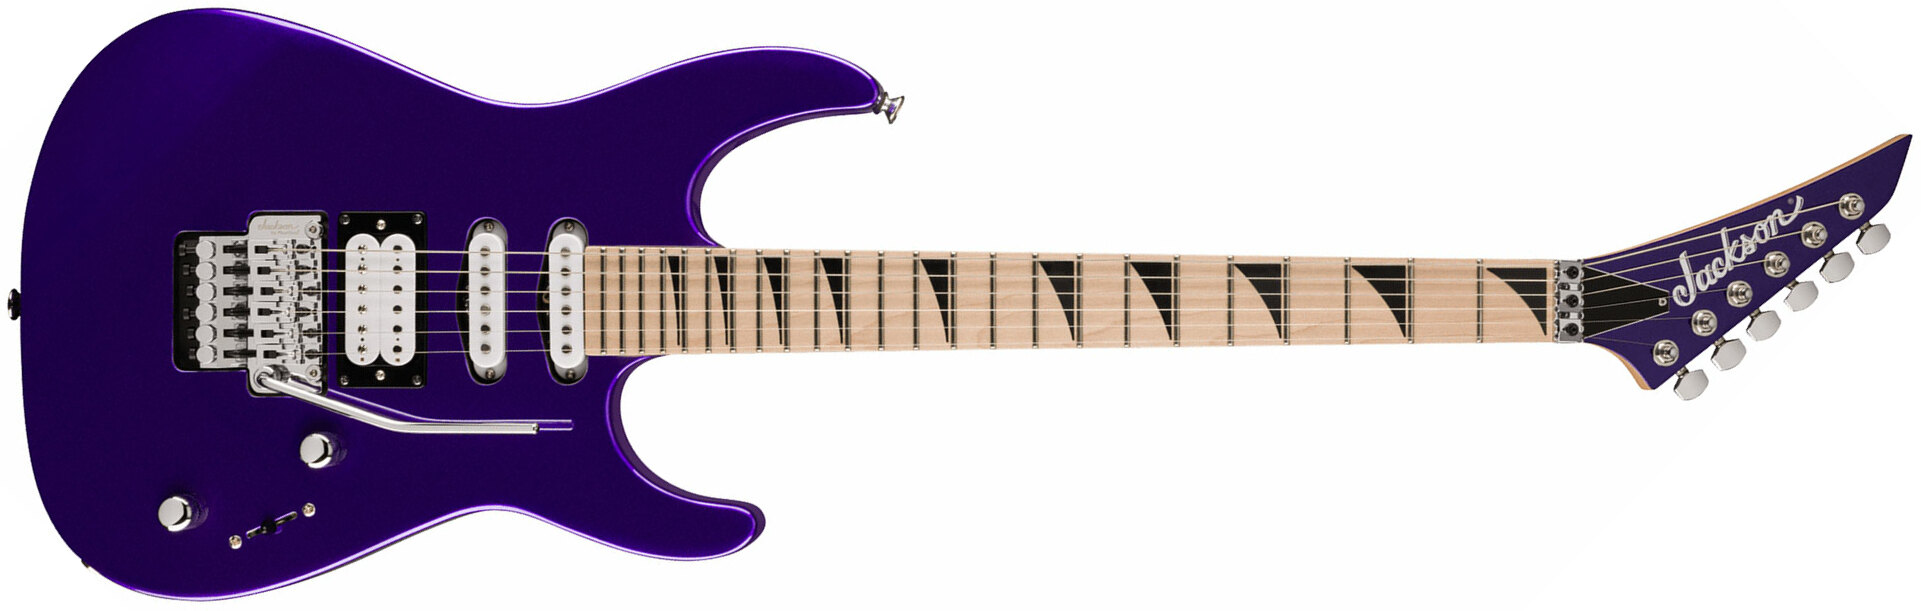 Jackson Dinky Dk3xr Hss Fr Mn - Deep Purple Metallic - E-Gitarre in Str-Form - Main picture